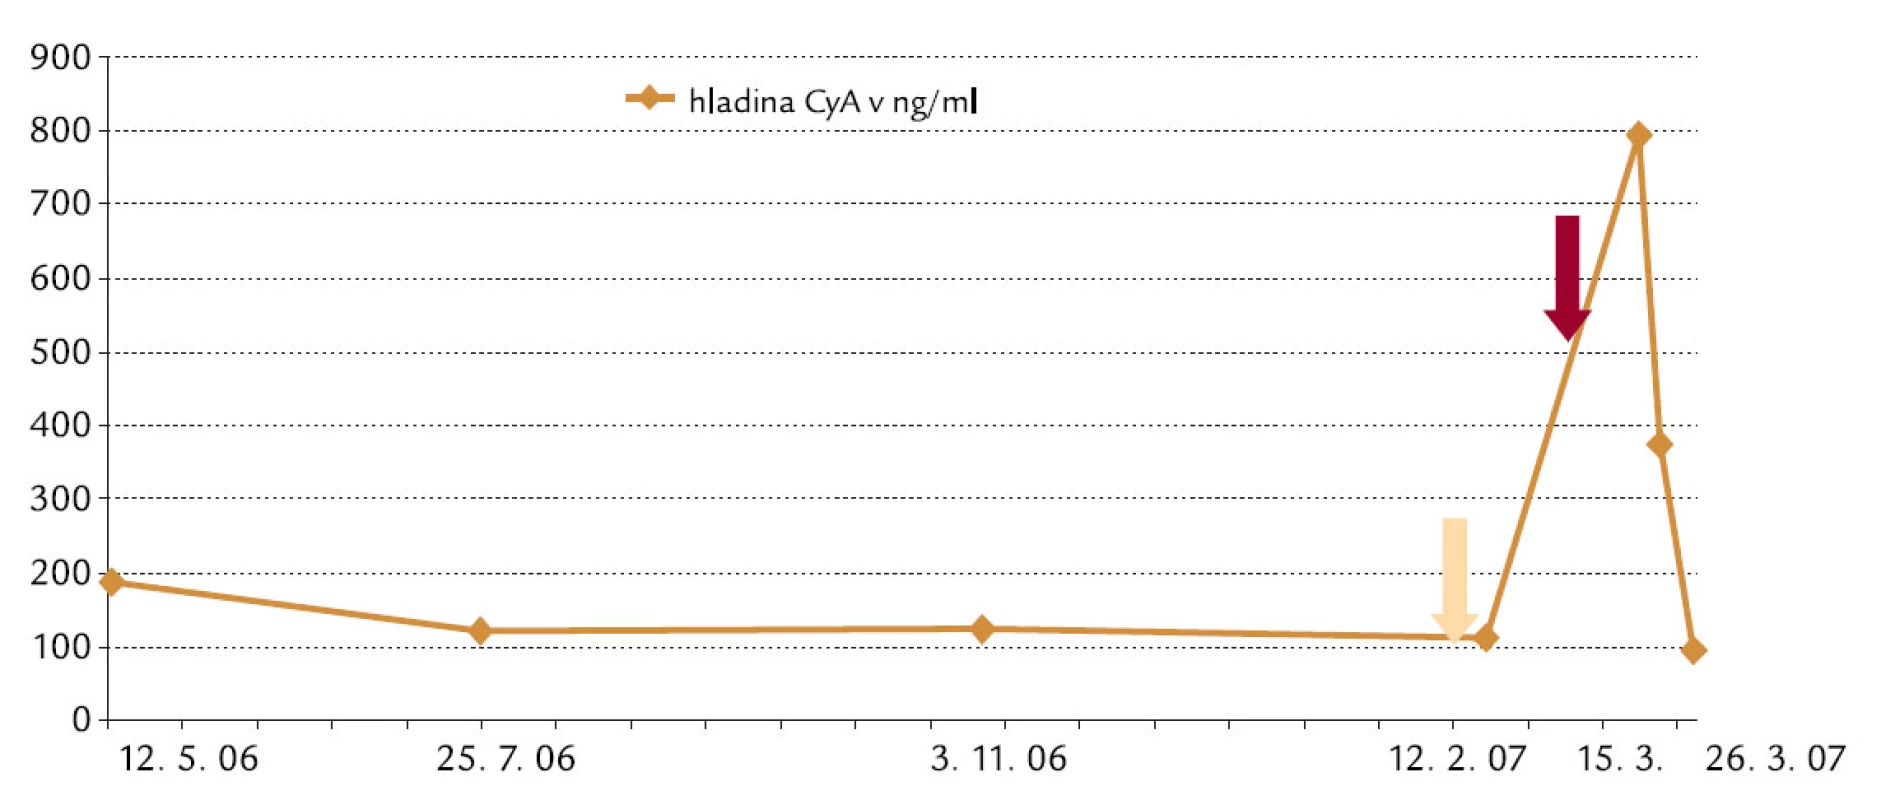 Dôsledky liekových interakci í 70-ročného pacienta s nefrotickým syndrómom.
Legenda:
Začiatok liečby cyklosporínom (CyA) 03/ 2006
Optimálne rozpätie CyA pre udržiavaci u liečbu 100– 150 μg/ ml
Zmeny v dlhodobej terapii:
12. 2. 2007 – atorvastatín 20 mg, aktuálny kreatinín/ S: 136 μmol/ l
8. 3. 2007 – ciprofloxacín + cefuroxím (predtým klaritromycín), ketokonazol 7 dní
15. 3. 2007 – flukonazol, kreatinín/ S: 655 μmol/ l; dialýza, ukončenie liečby CyA